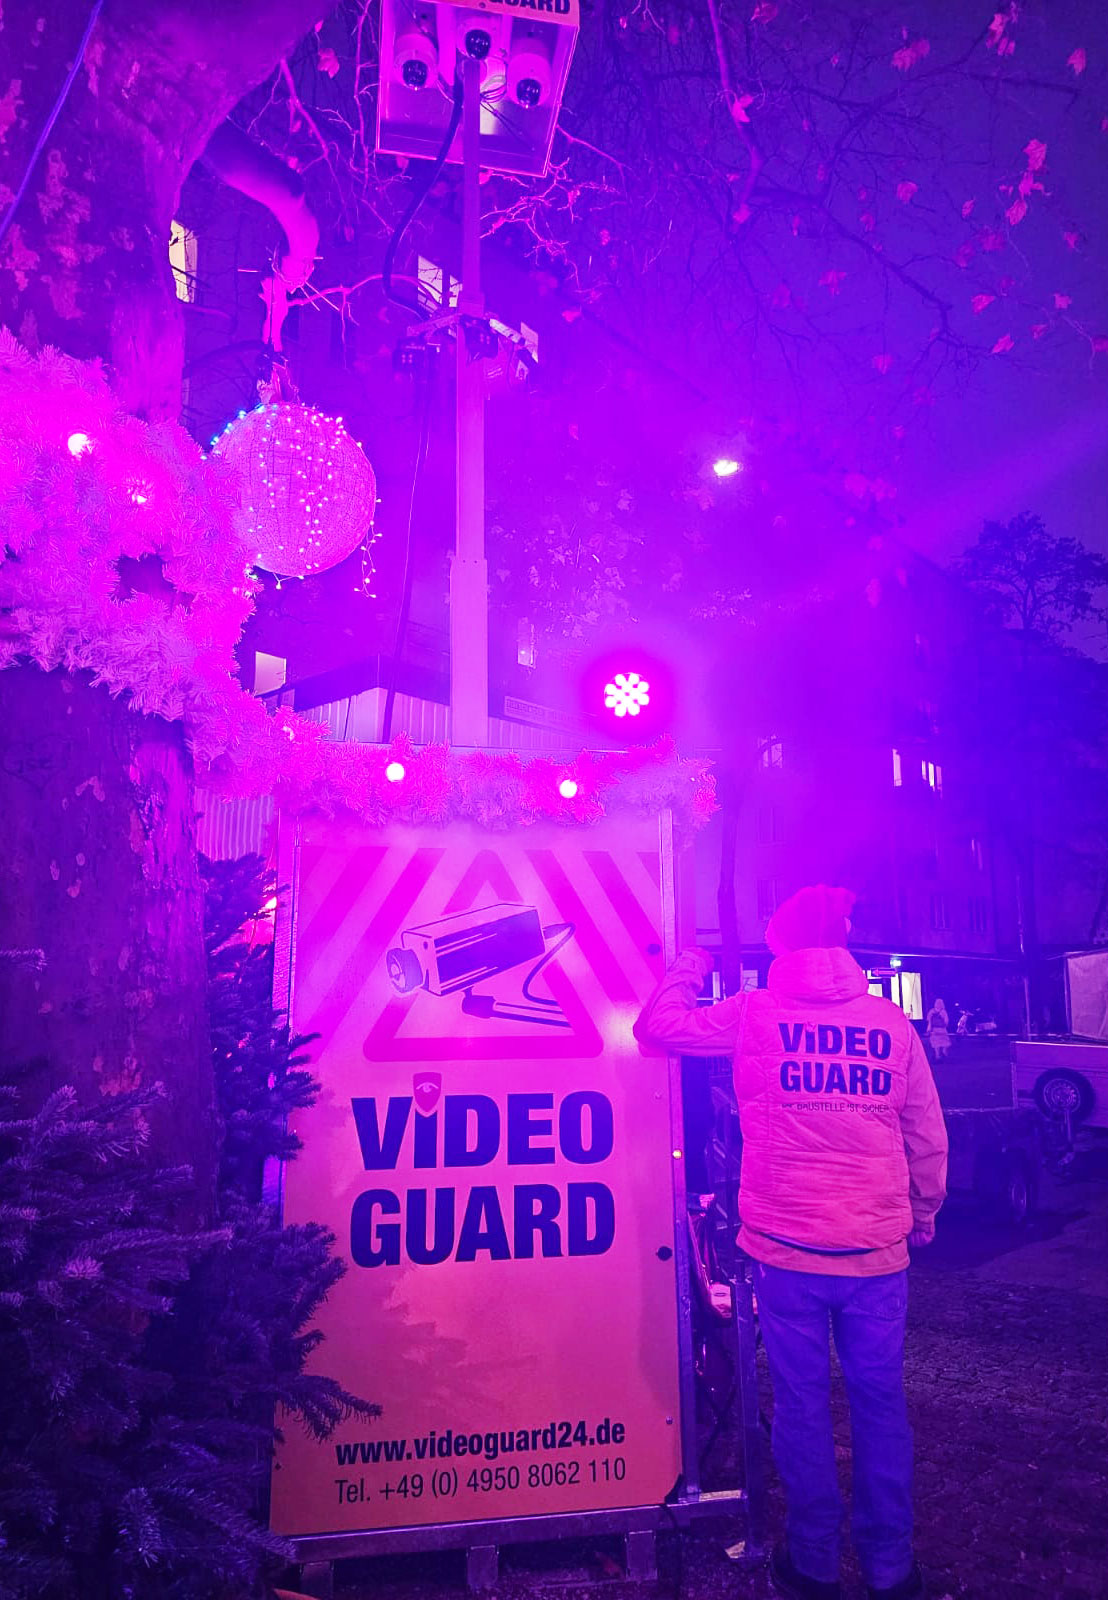 Video Guard in Bremen's Überseestadt district